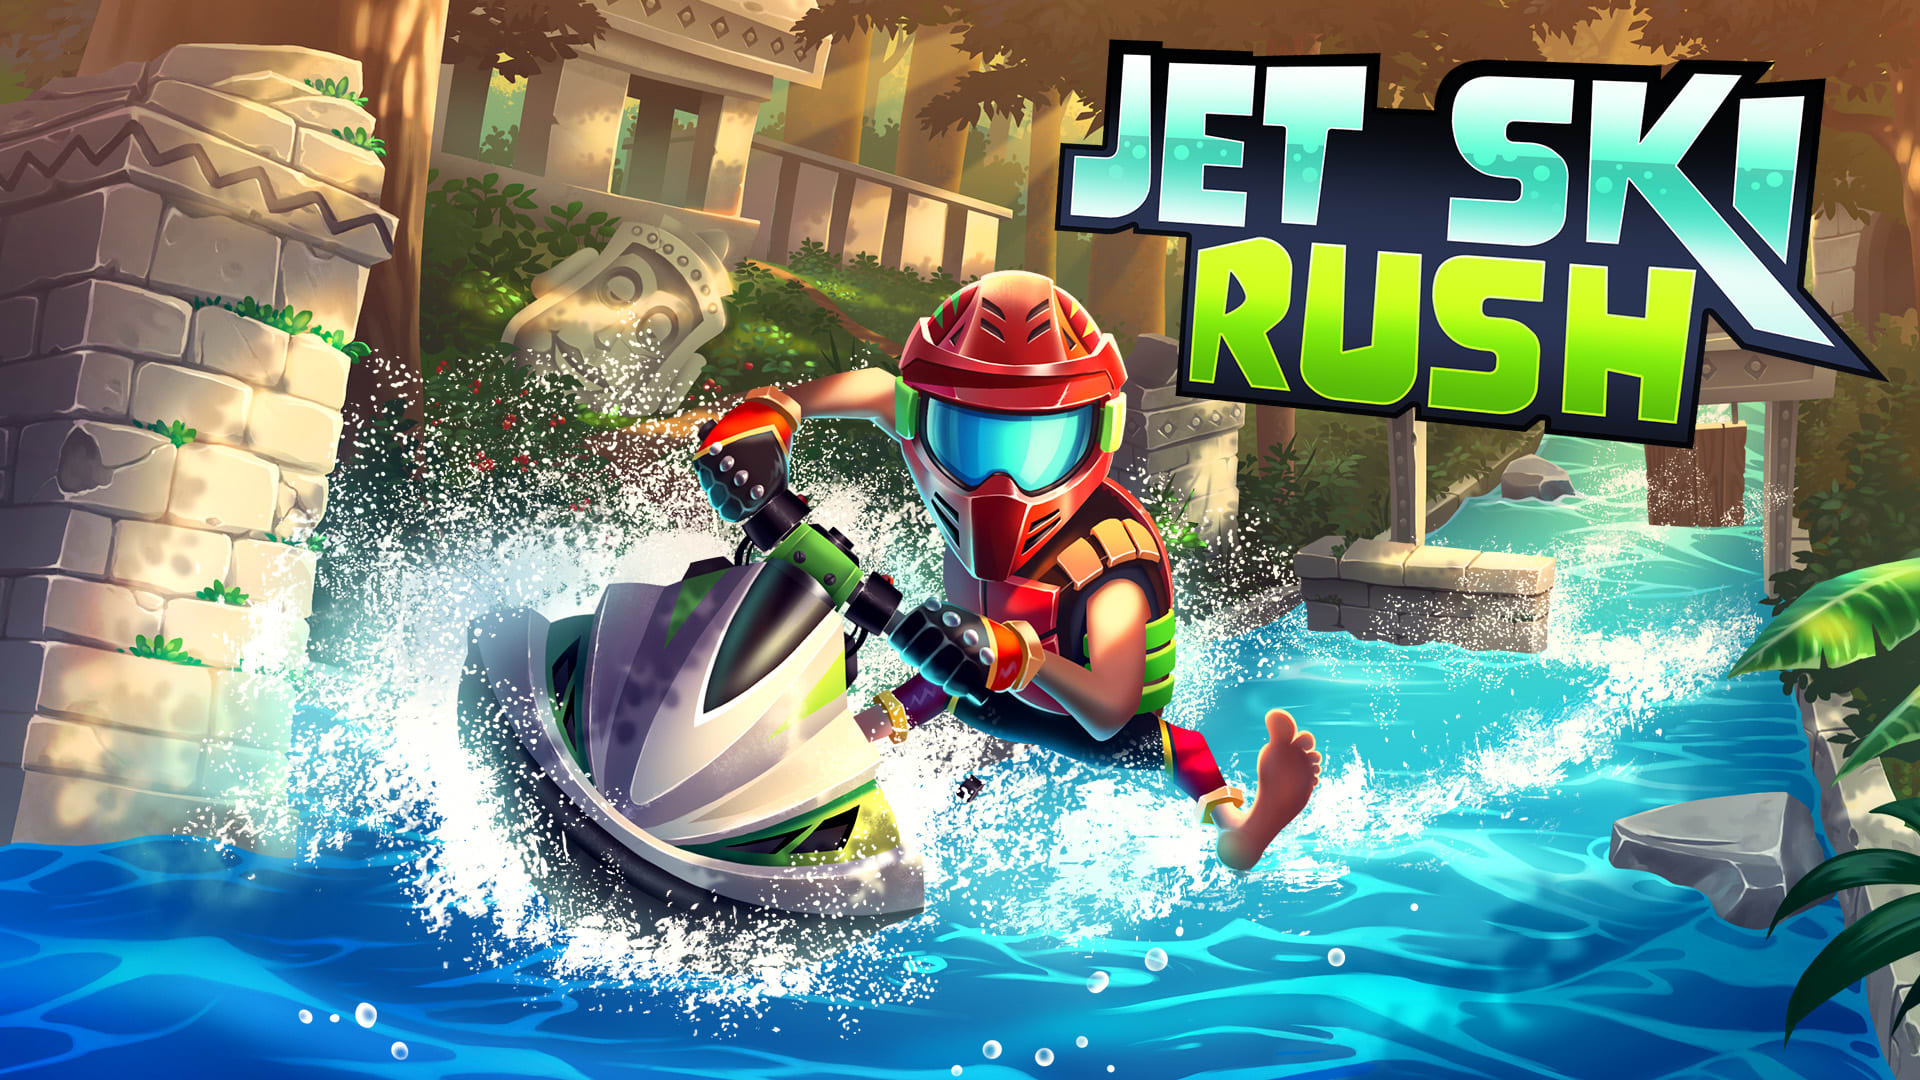 Jet Ski Rush